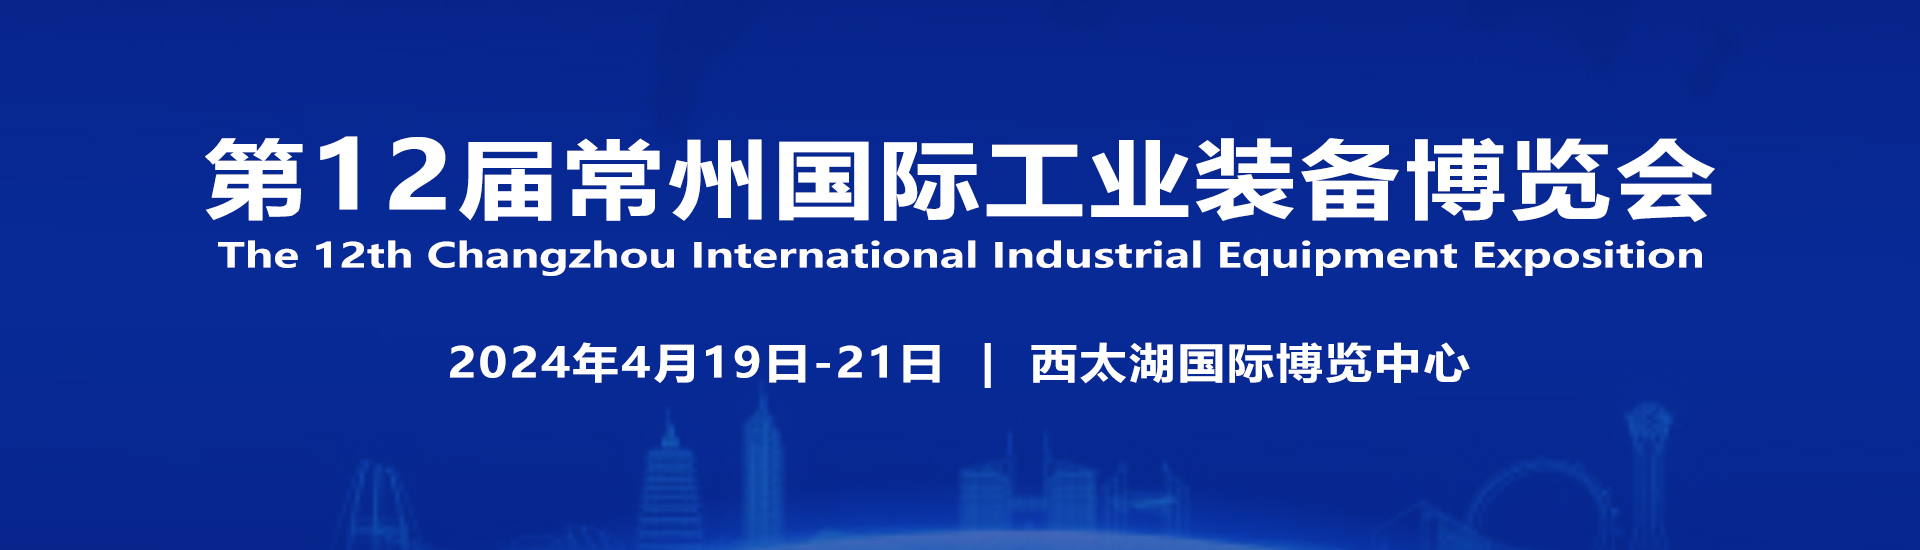 2024第12届常州国际工业装备博览会